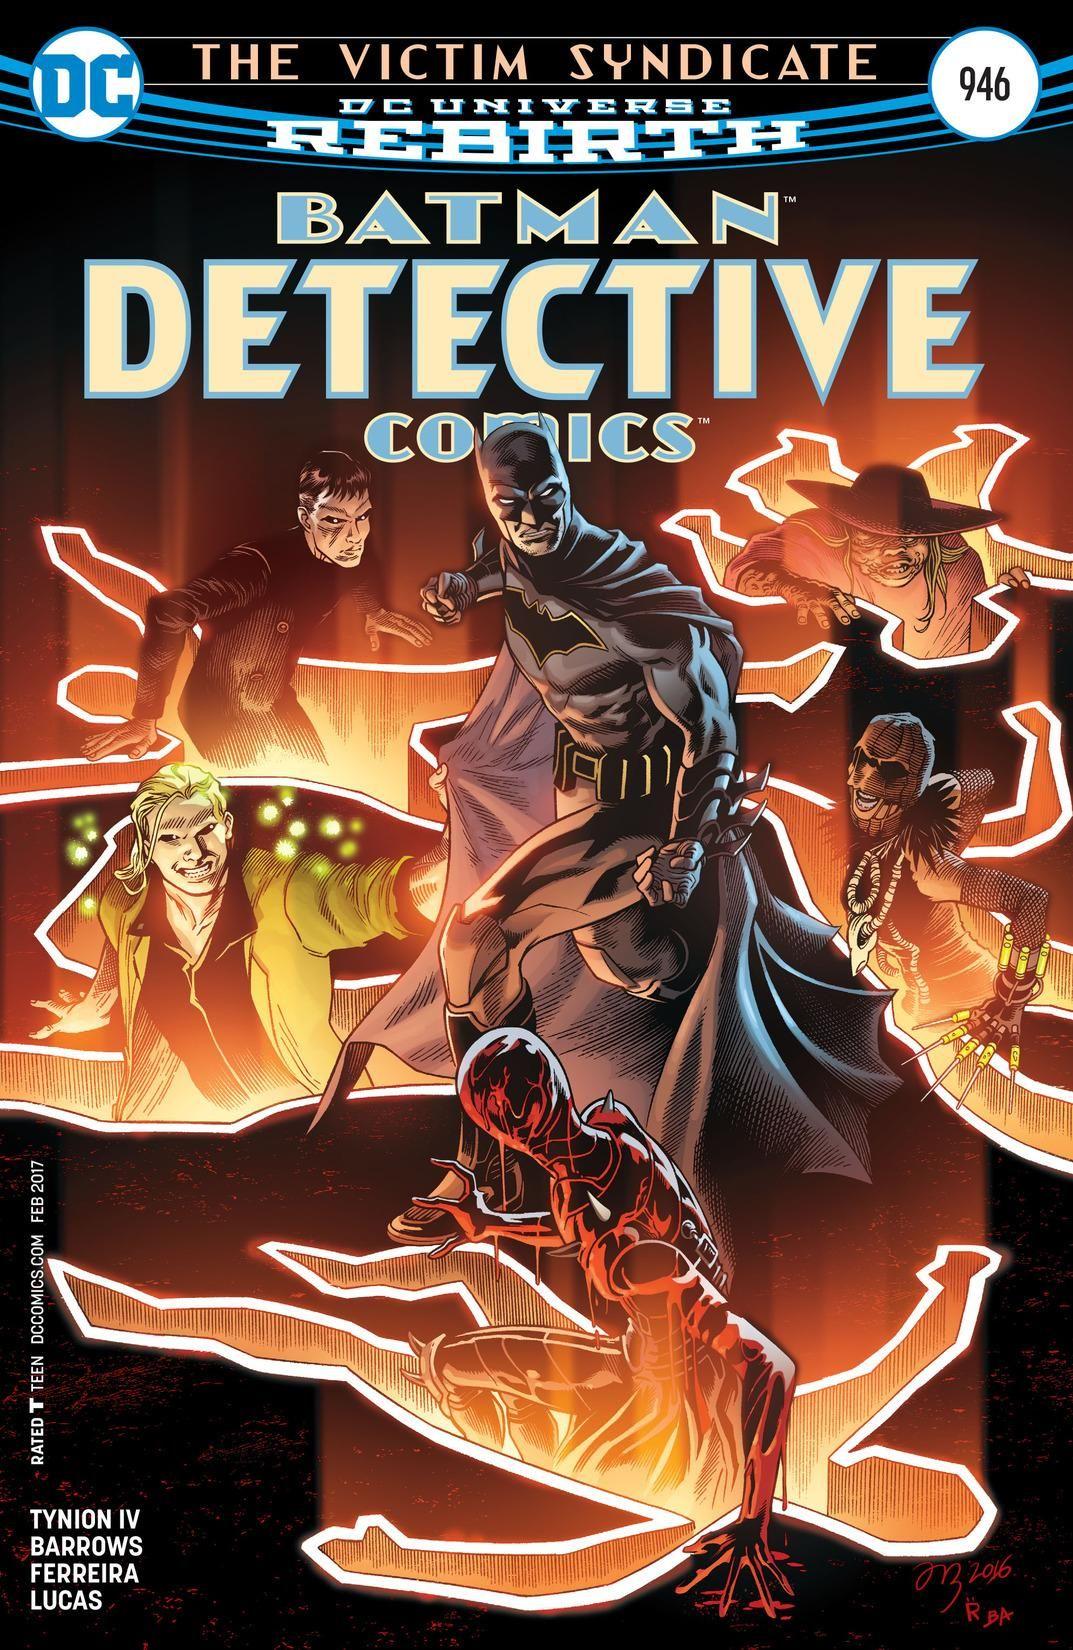 Detective Comics Vol. 1 #946